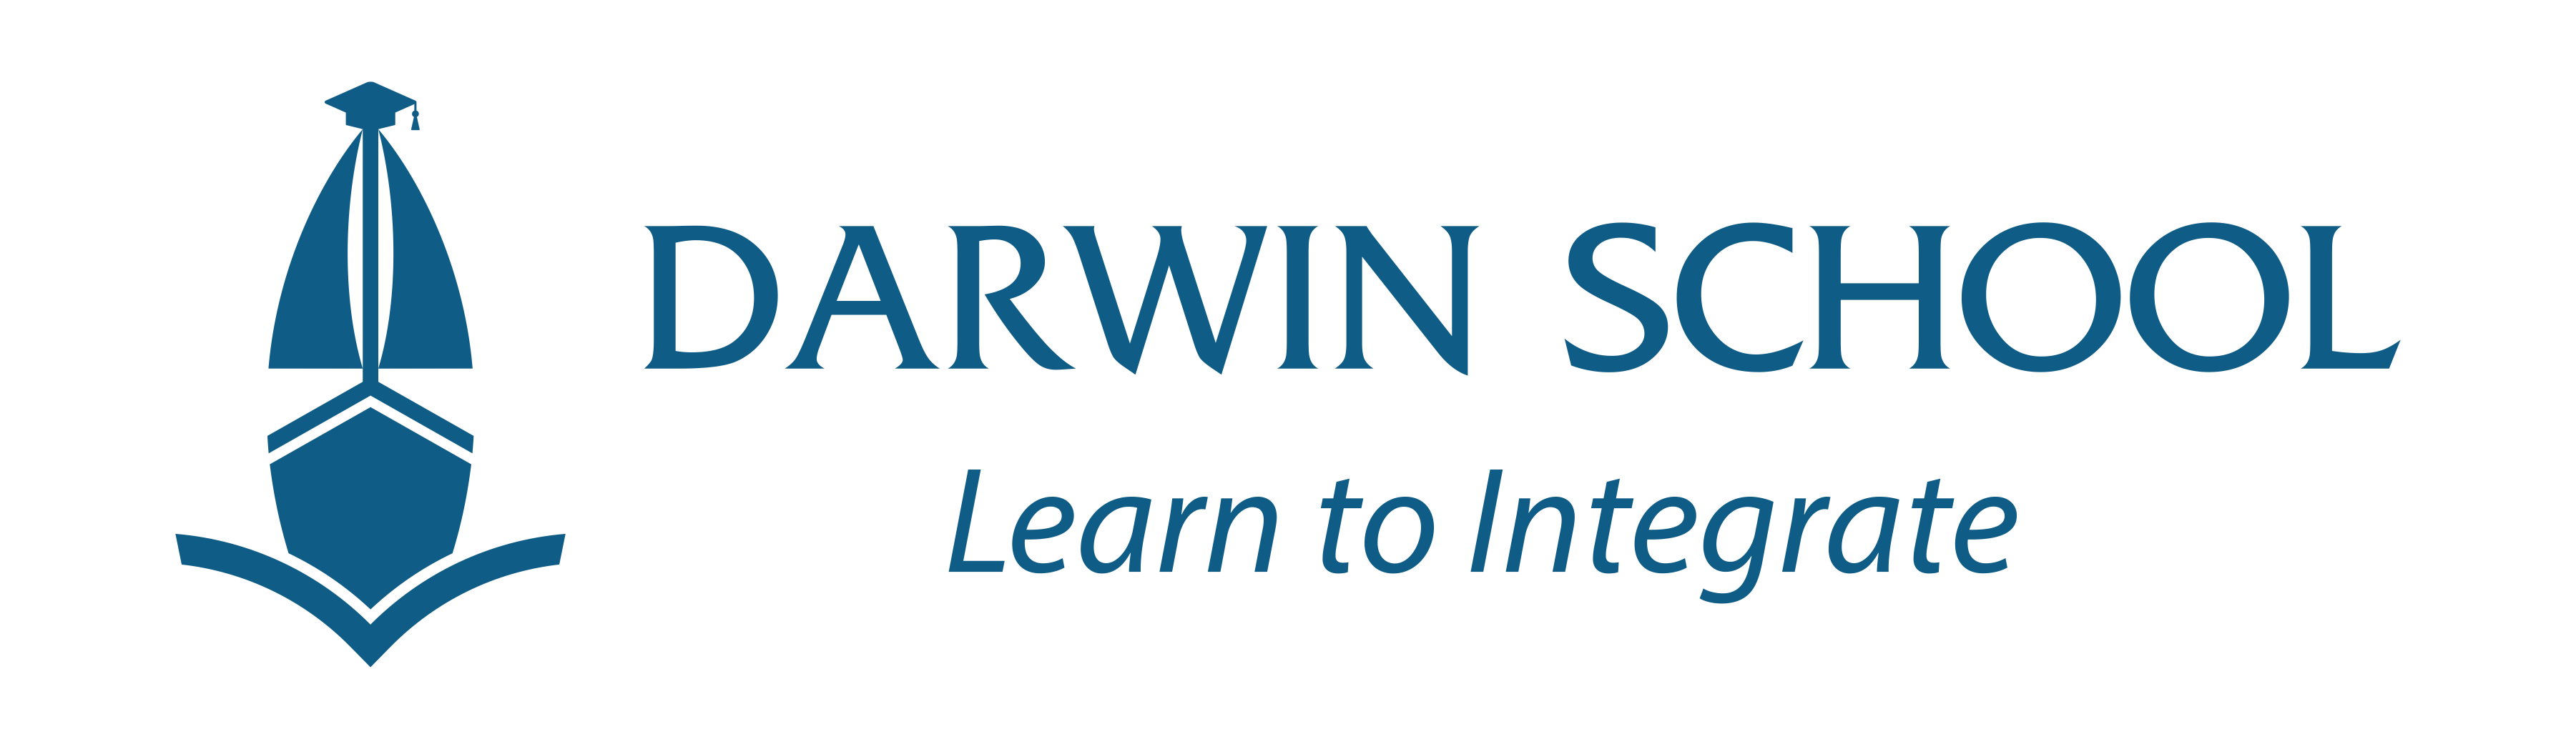 Hệ thống trường liên cấp Darwin